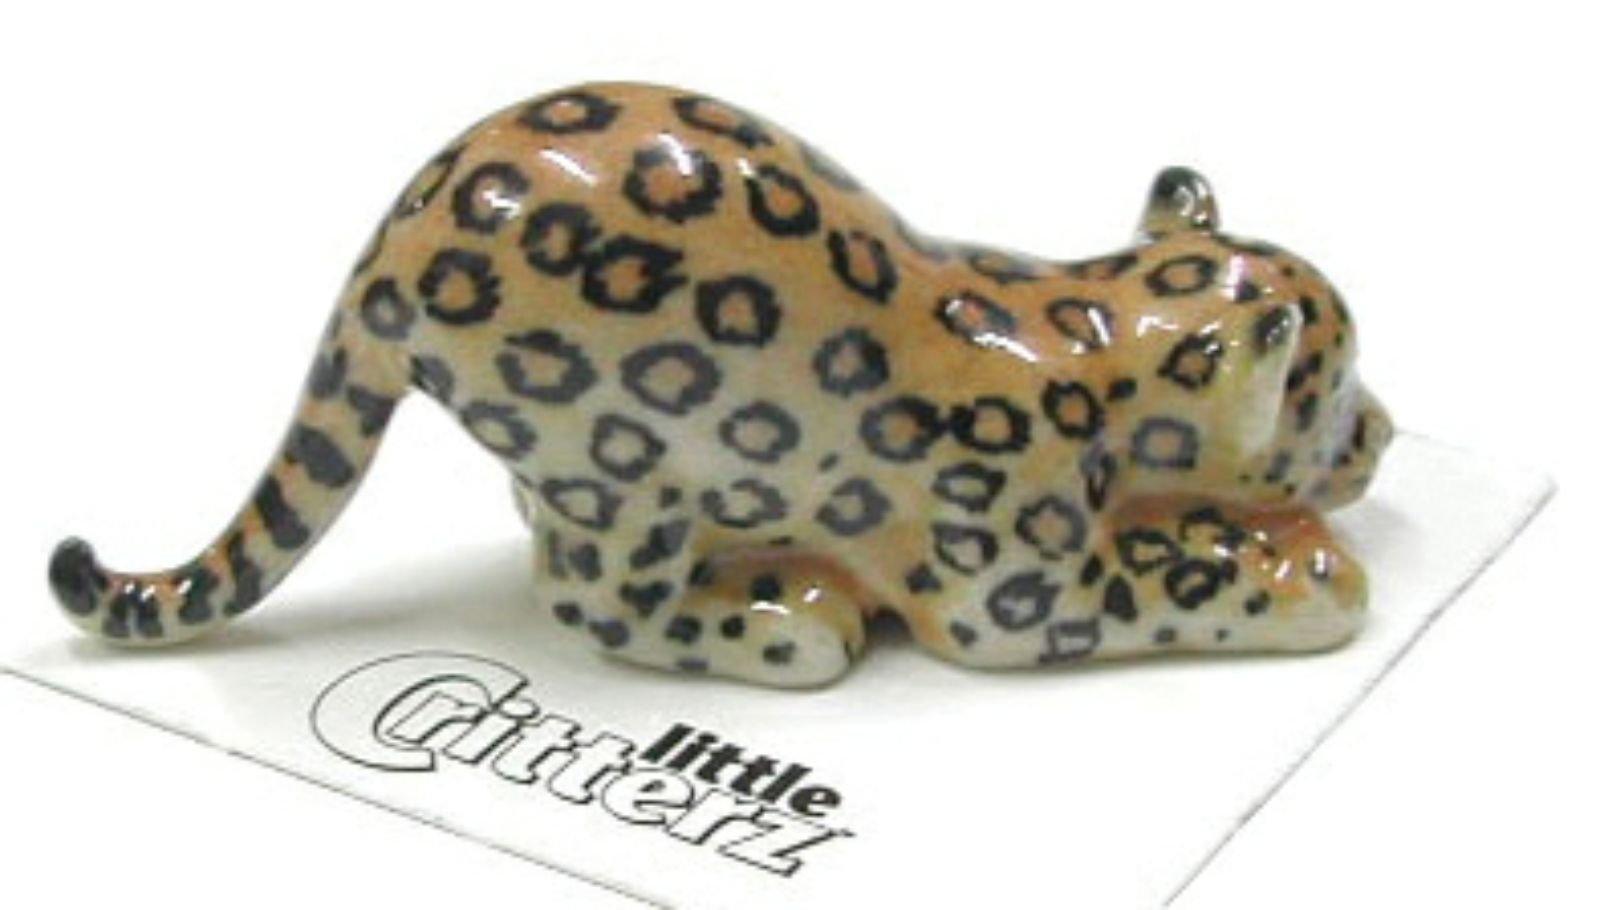 Little Critterz Miniature Porcelain Animal Figure Amur Leopard /"Siberia/" LC928